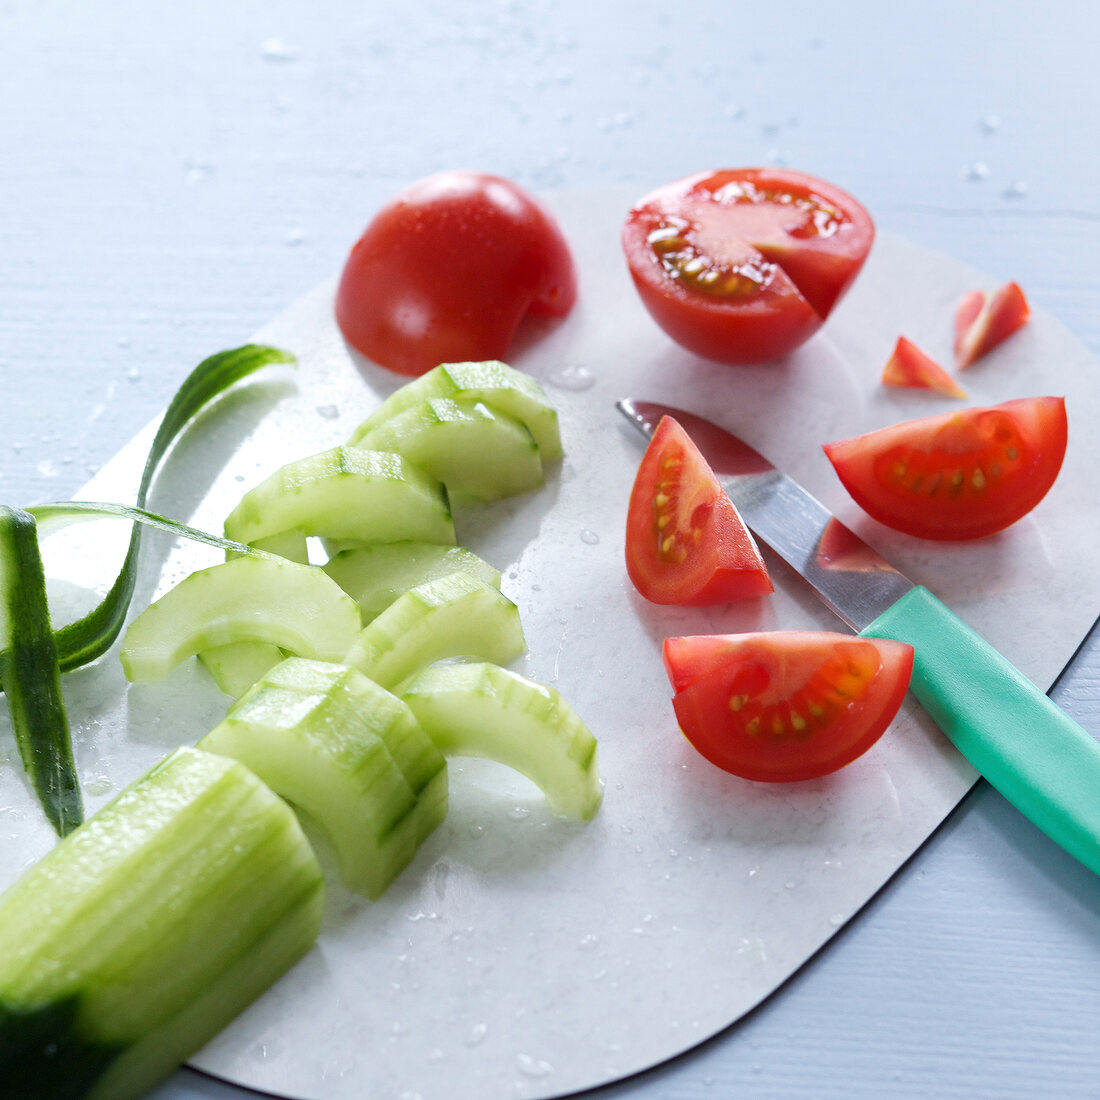 Kochkurs, Tomaten und Salat- gurke in Stücke schneiden, Step 2